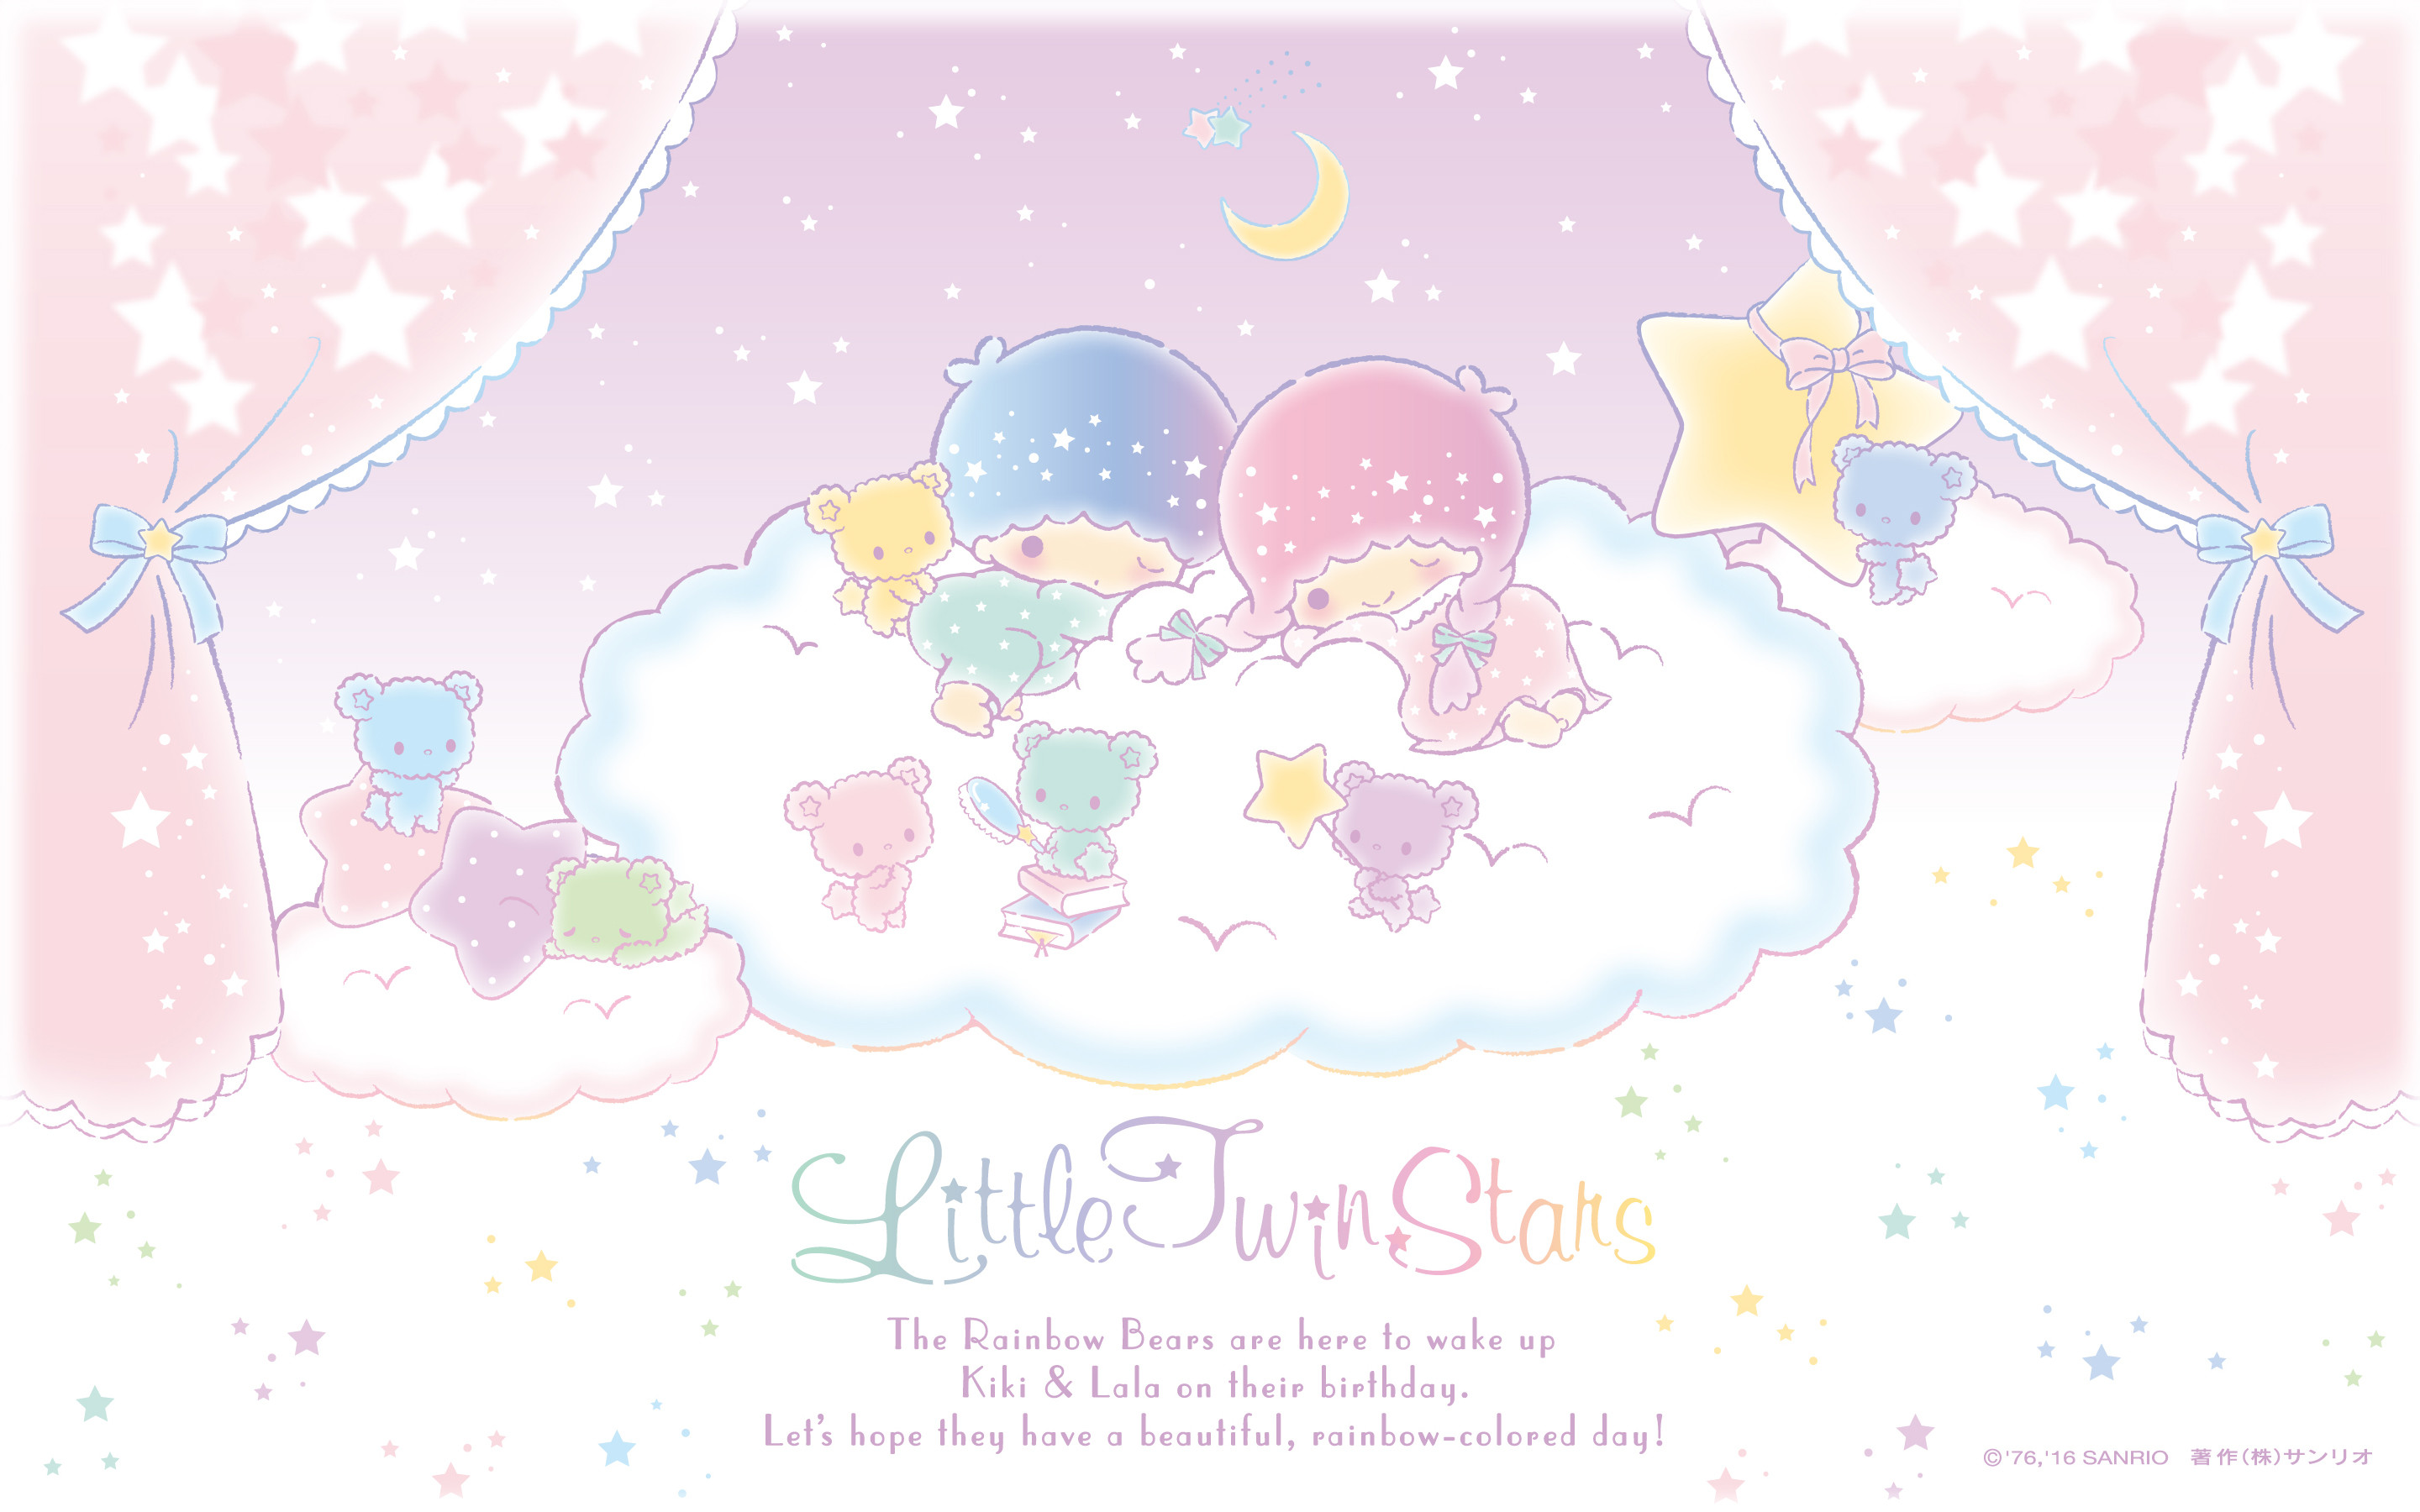 2880x1800 Sanrio characters Â· ãAndroid iPhone PCãLittle Twin Stars Wallpaper 201612  åäºææ¡å¸ æ¥æ¬å®æ¹